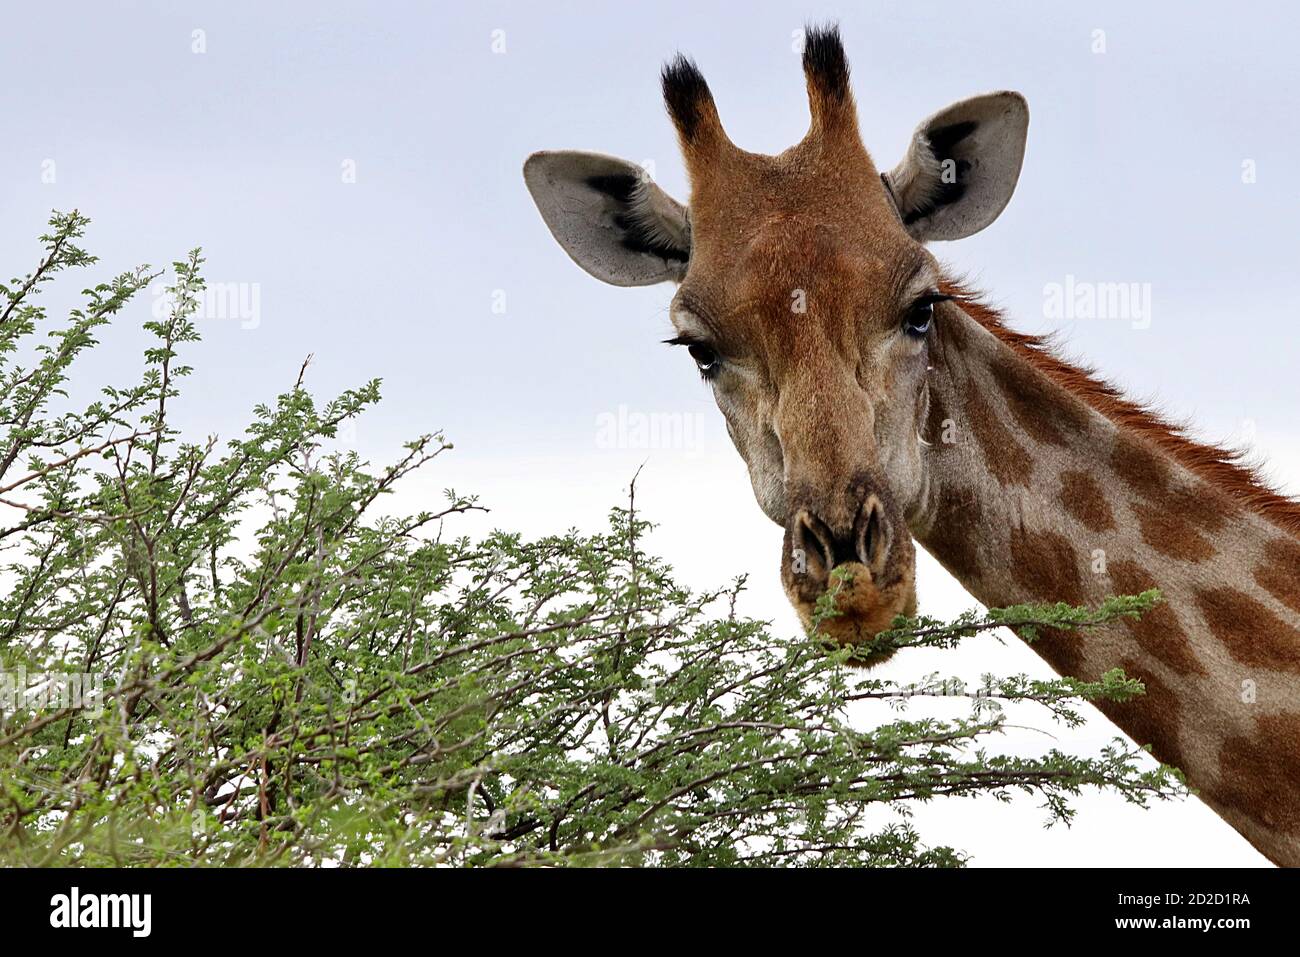 Une girafe sud-africaine (Giraffa camelopardalis giraffa) face dans la végétation pendant la saison humide à la réserve d'Erindi, région d'Erongo, Namibie. Banque D'Images